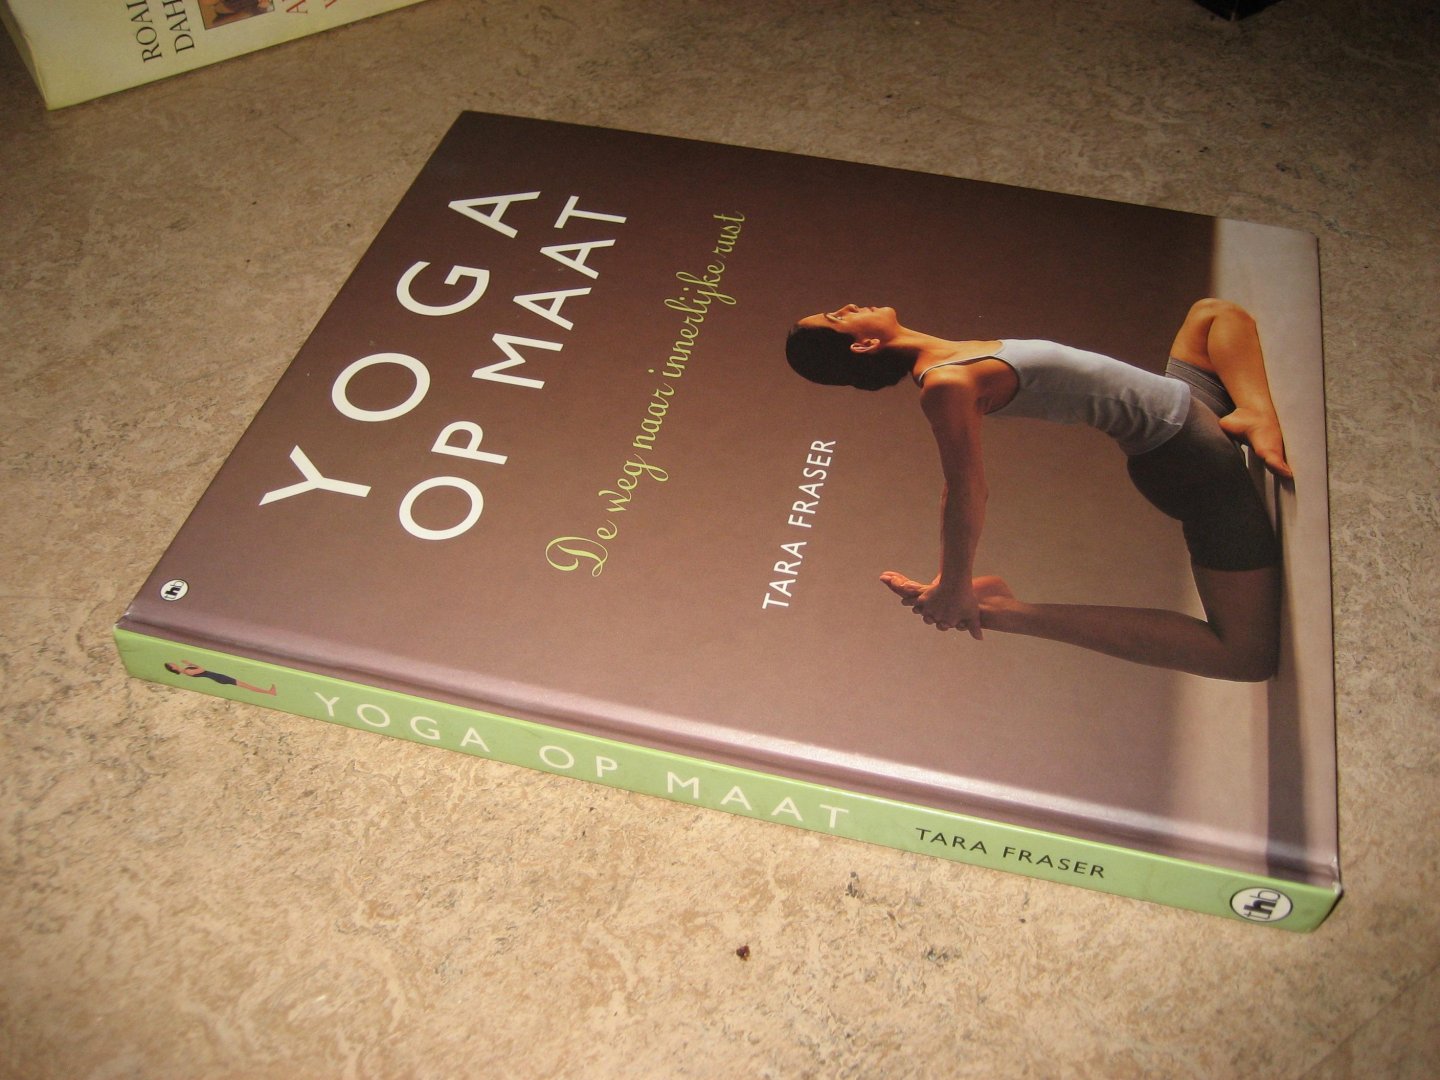 Fraser, Tara - Yoga op maat. de weg naar innerlijke rust